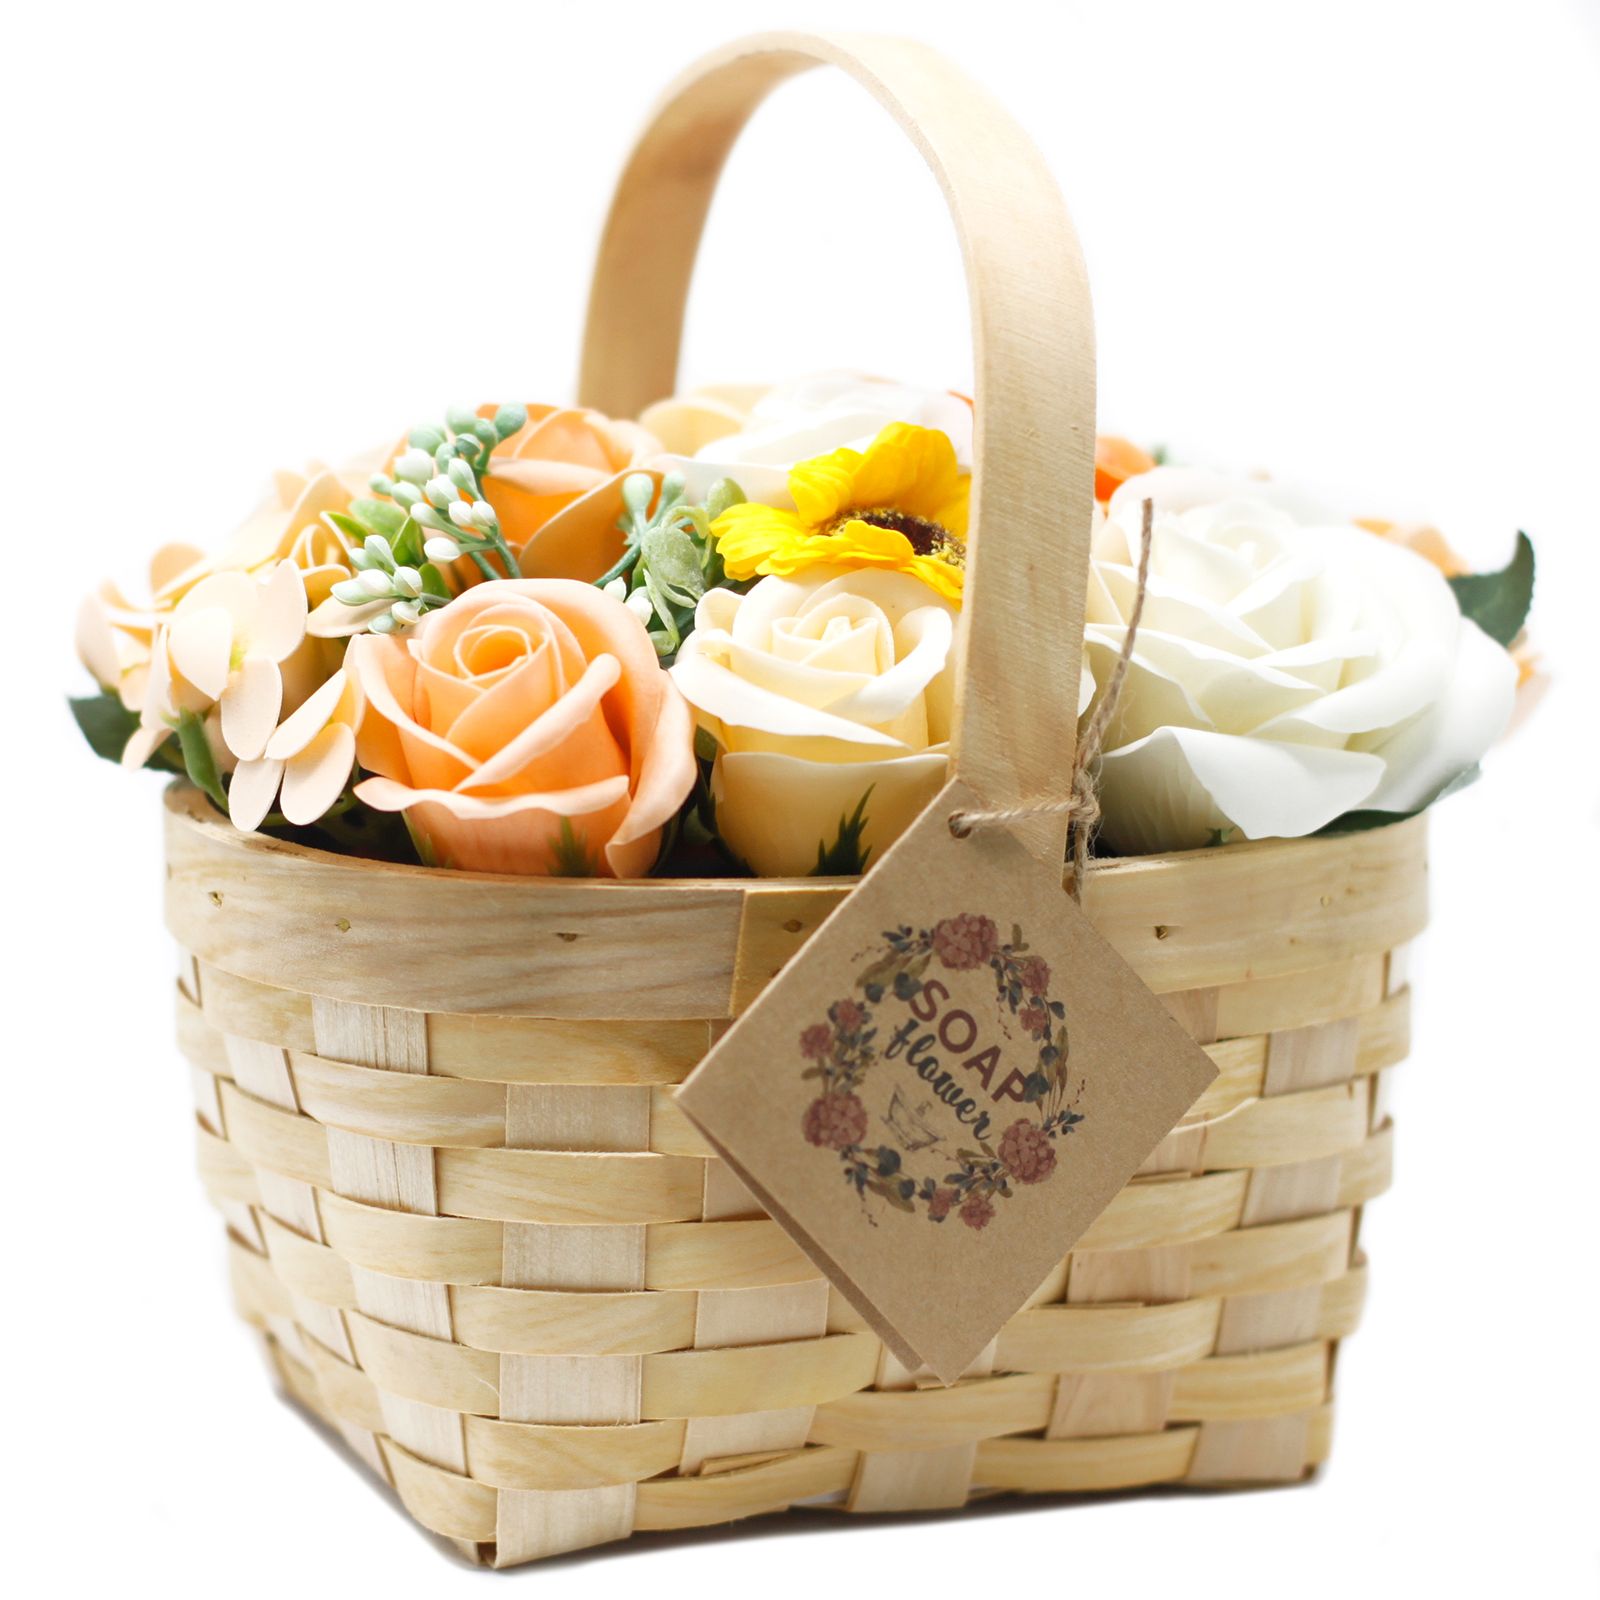 Dárkové balení Mýdlových květů v proutěném koši - růže, karafiáty, cínie a šalvěj - Čajové růže AWM, Ltd, S3 8AL